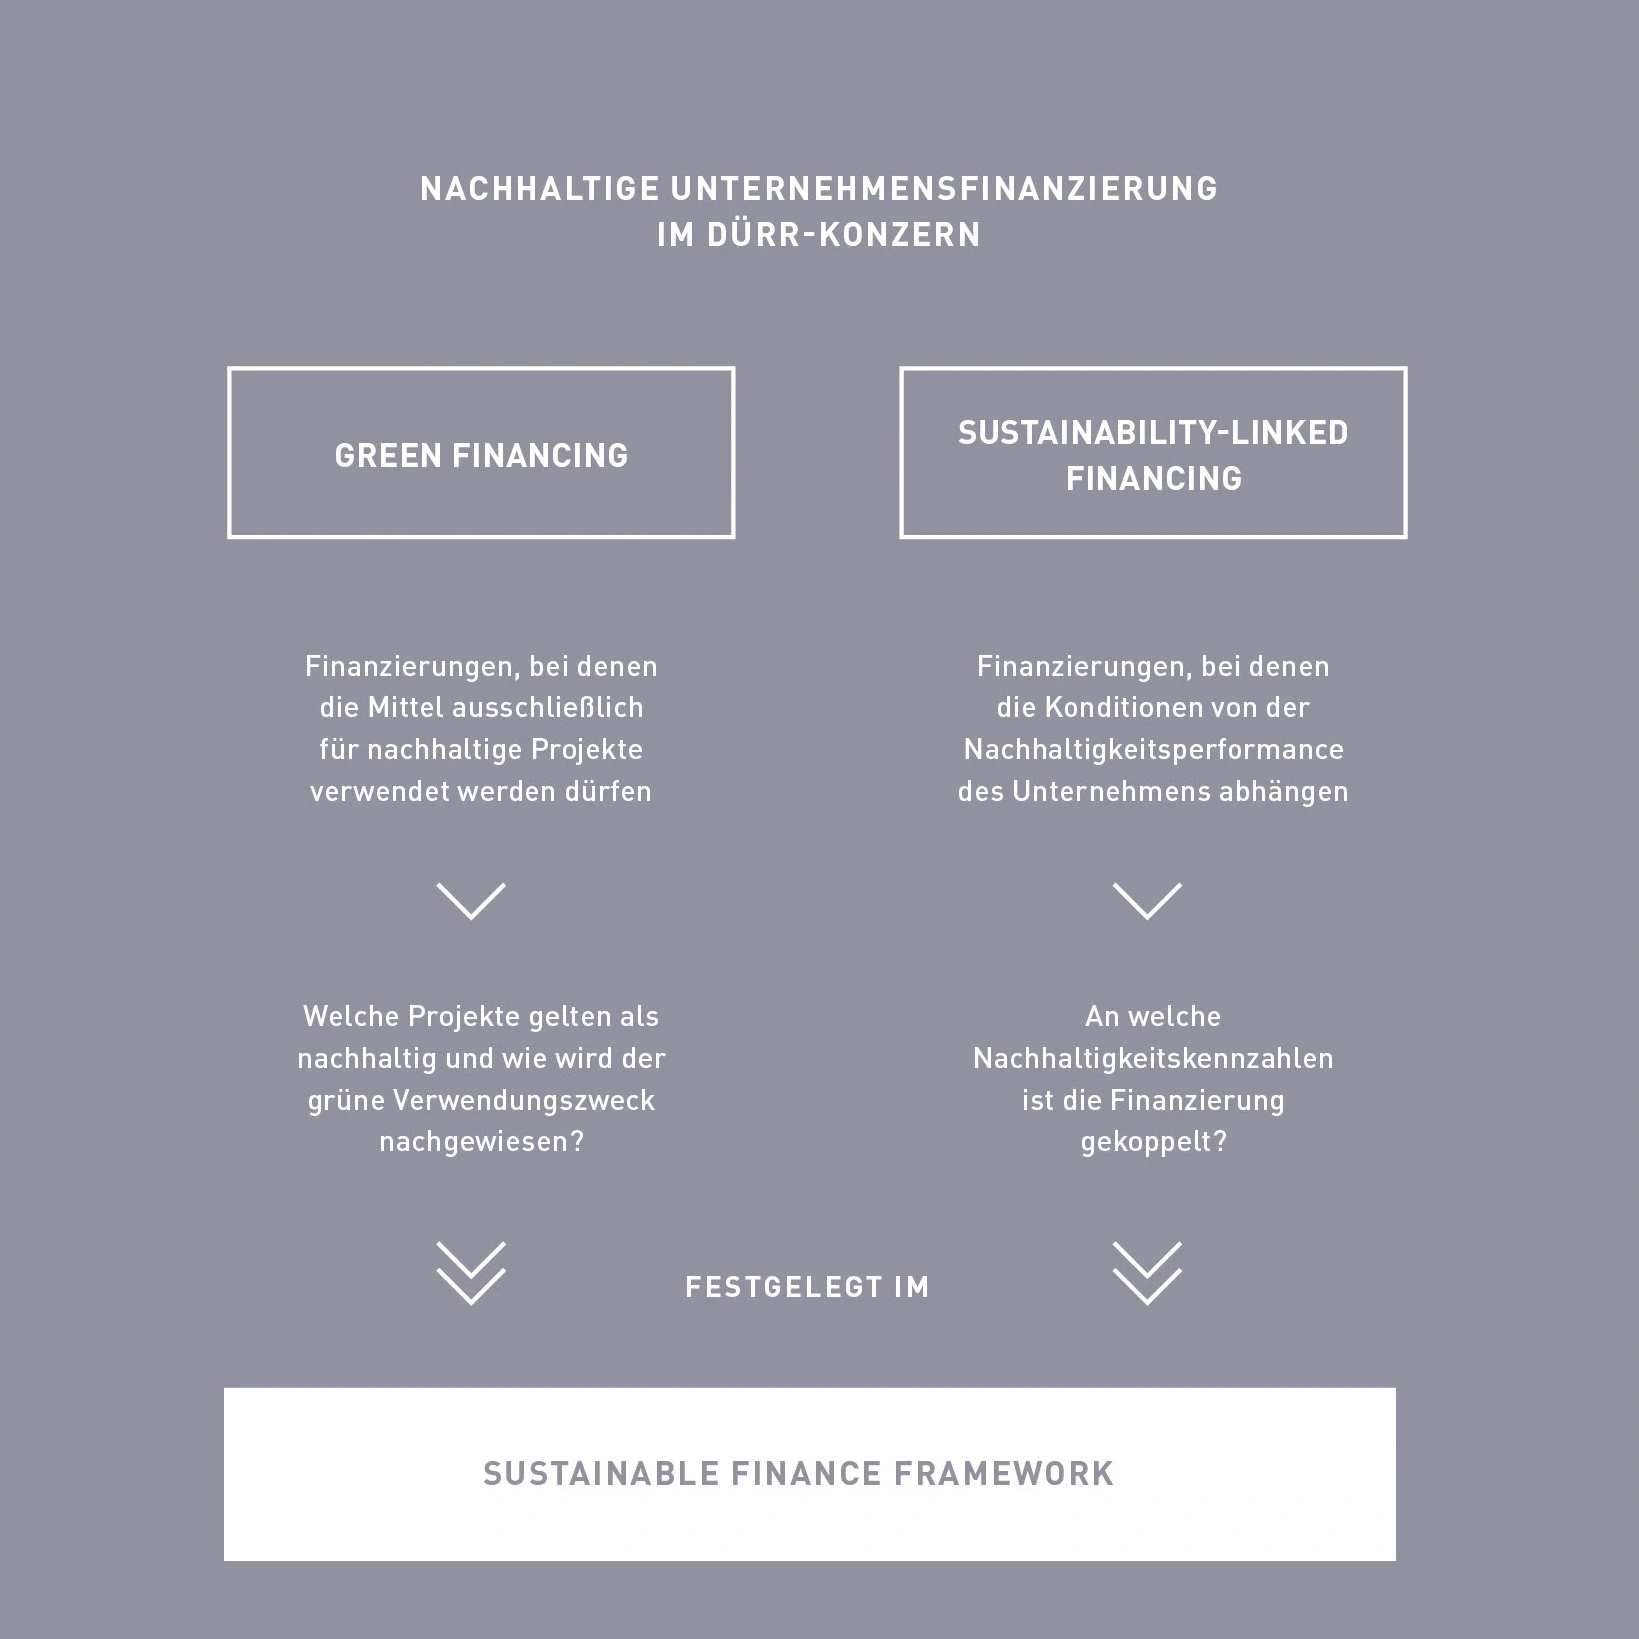 Das Sustainable Finance Framework visualisiert